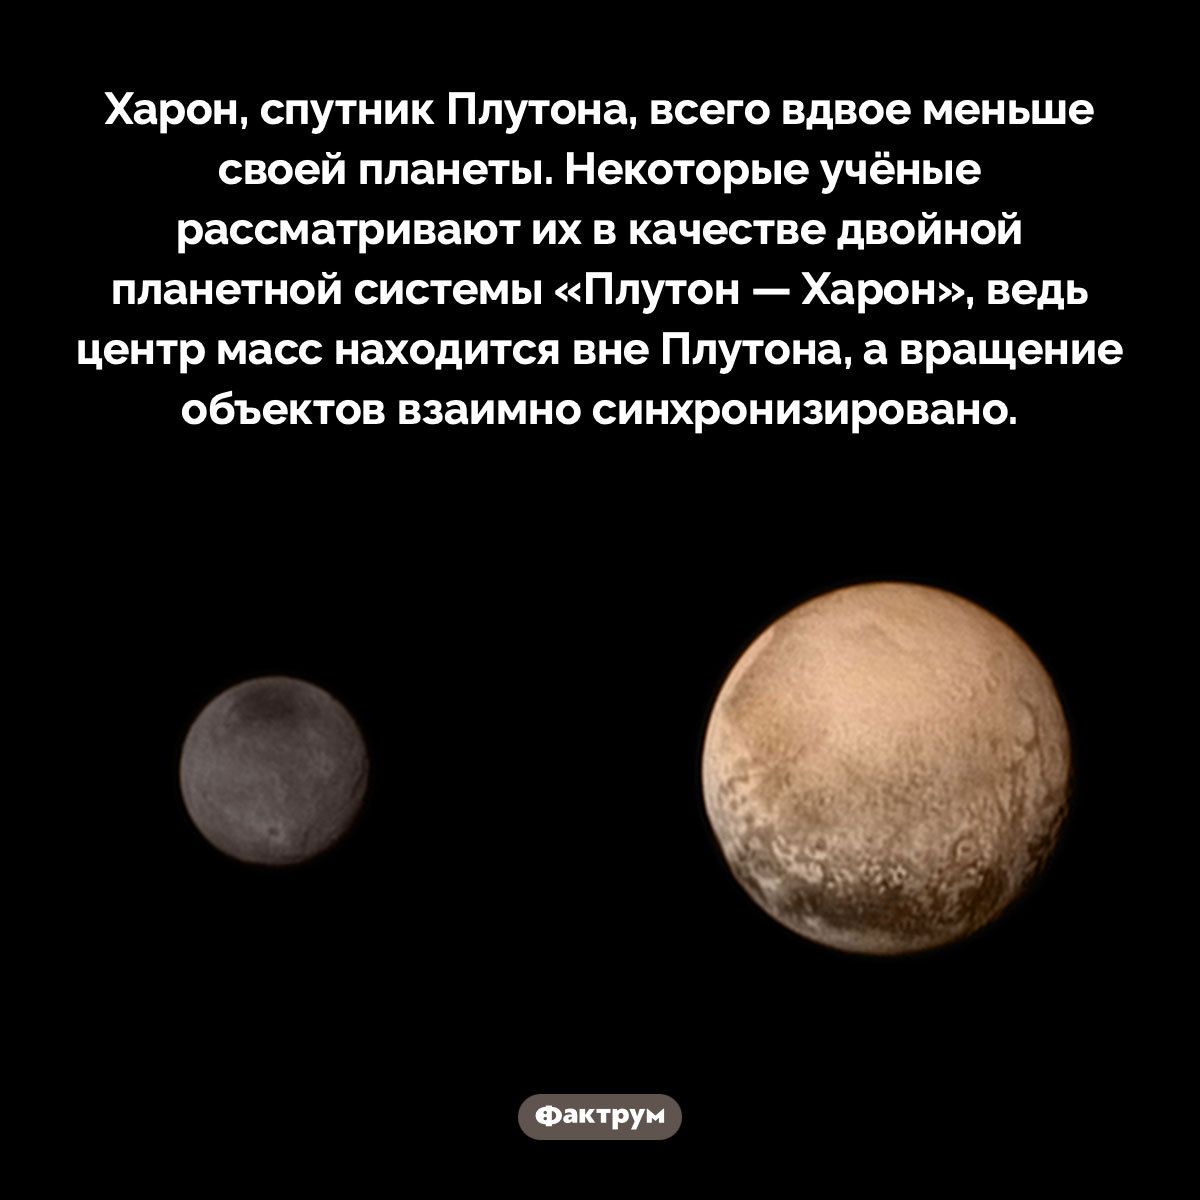 Харон, спутник Плутона, всего вдвое меньше своей планеты. Харон, спутник Плутона, всего вдвое меньше своей планеты. Некоторые учёные рассматривают их в качестве двойной планетной системы «Плутон — Харон», ведь центр масс находится вне Плутона, а вращение объектов взаимно синхронизировано.